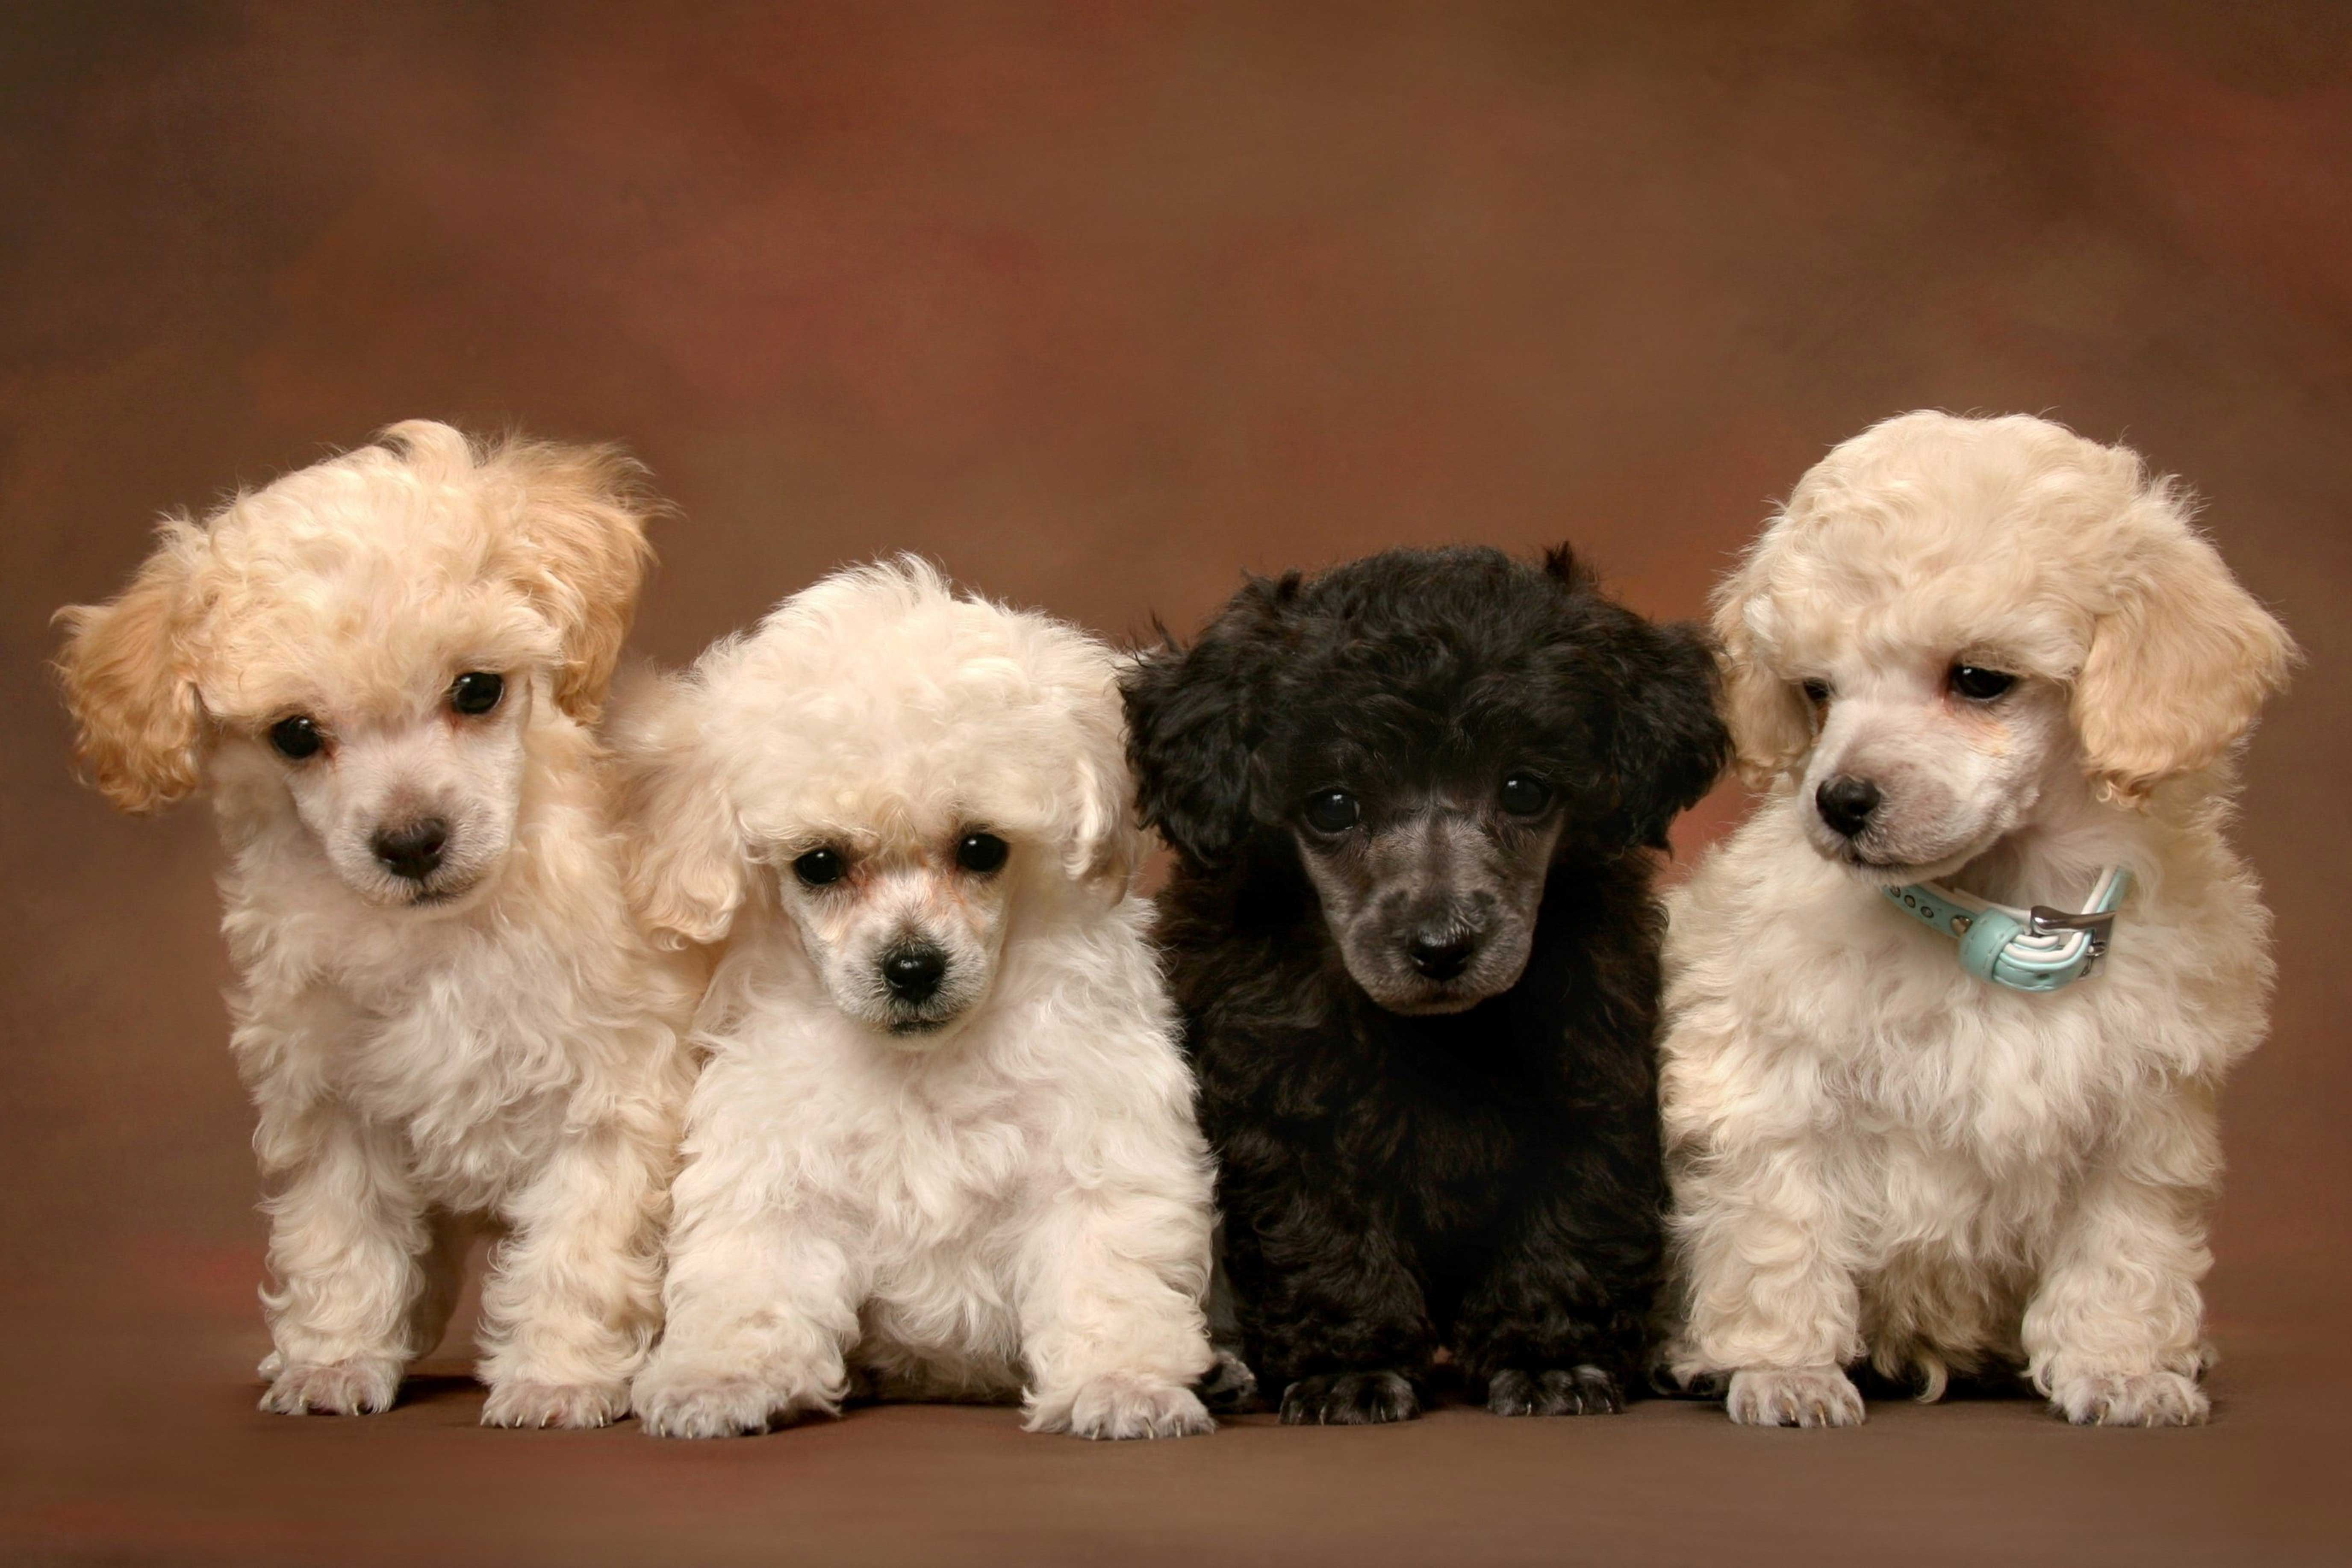 poodles wallpaper. Cute Poodle Puppies Wallpaper. Poodle, Toy poodle, Poodle puppy